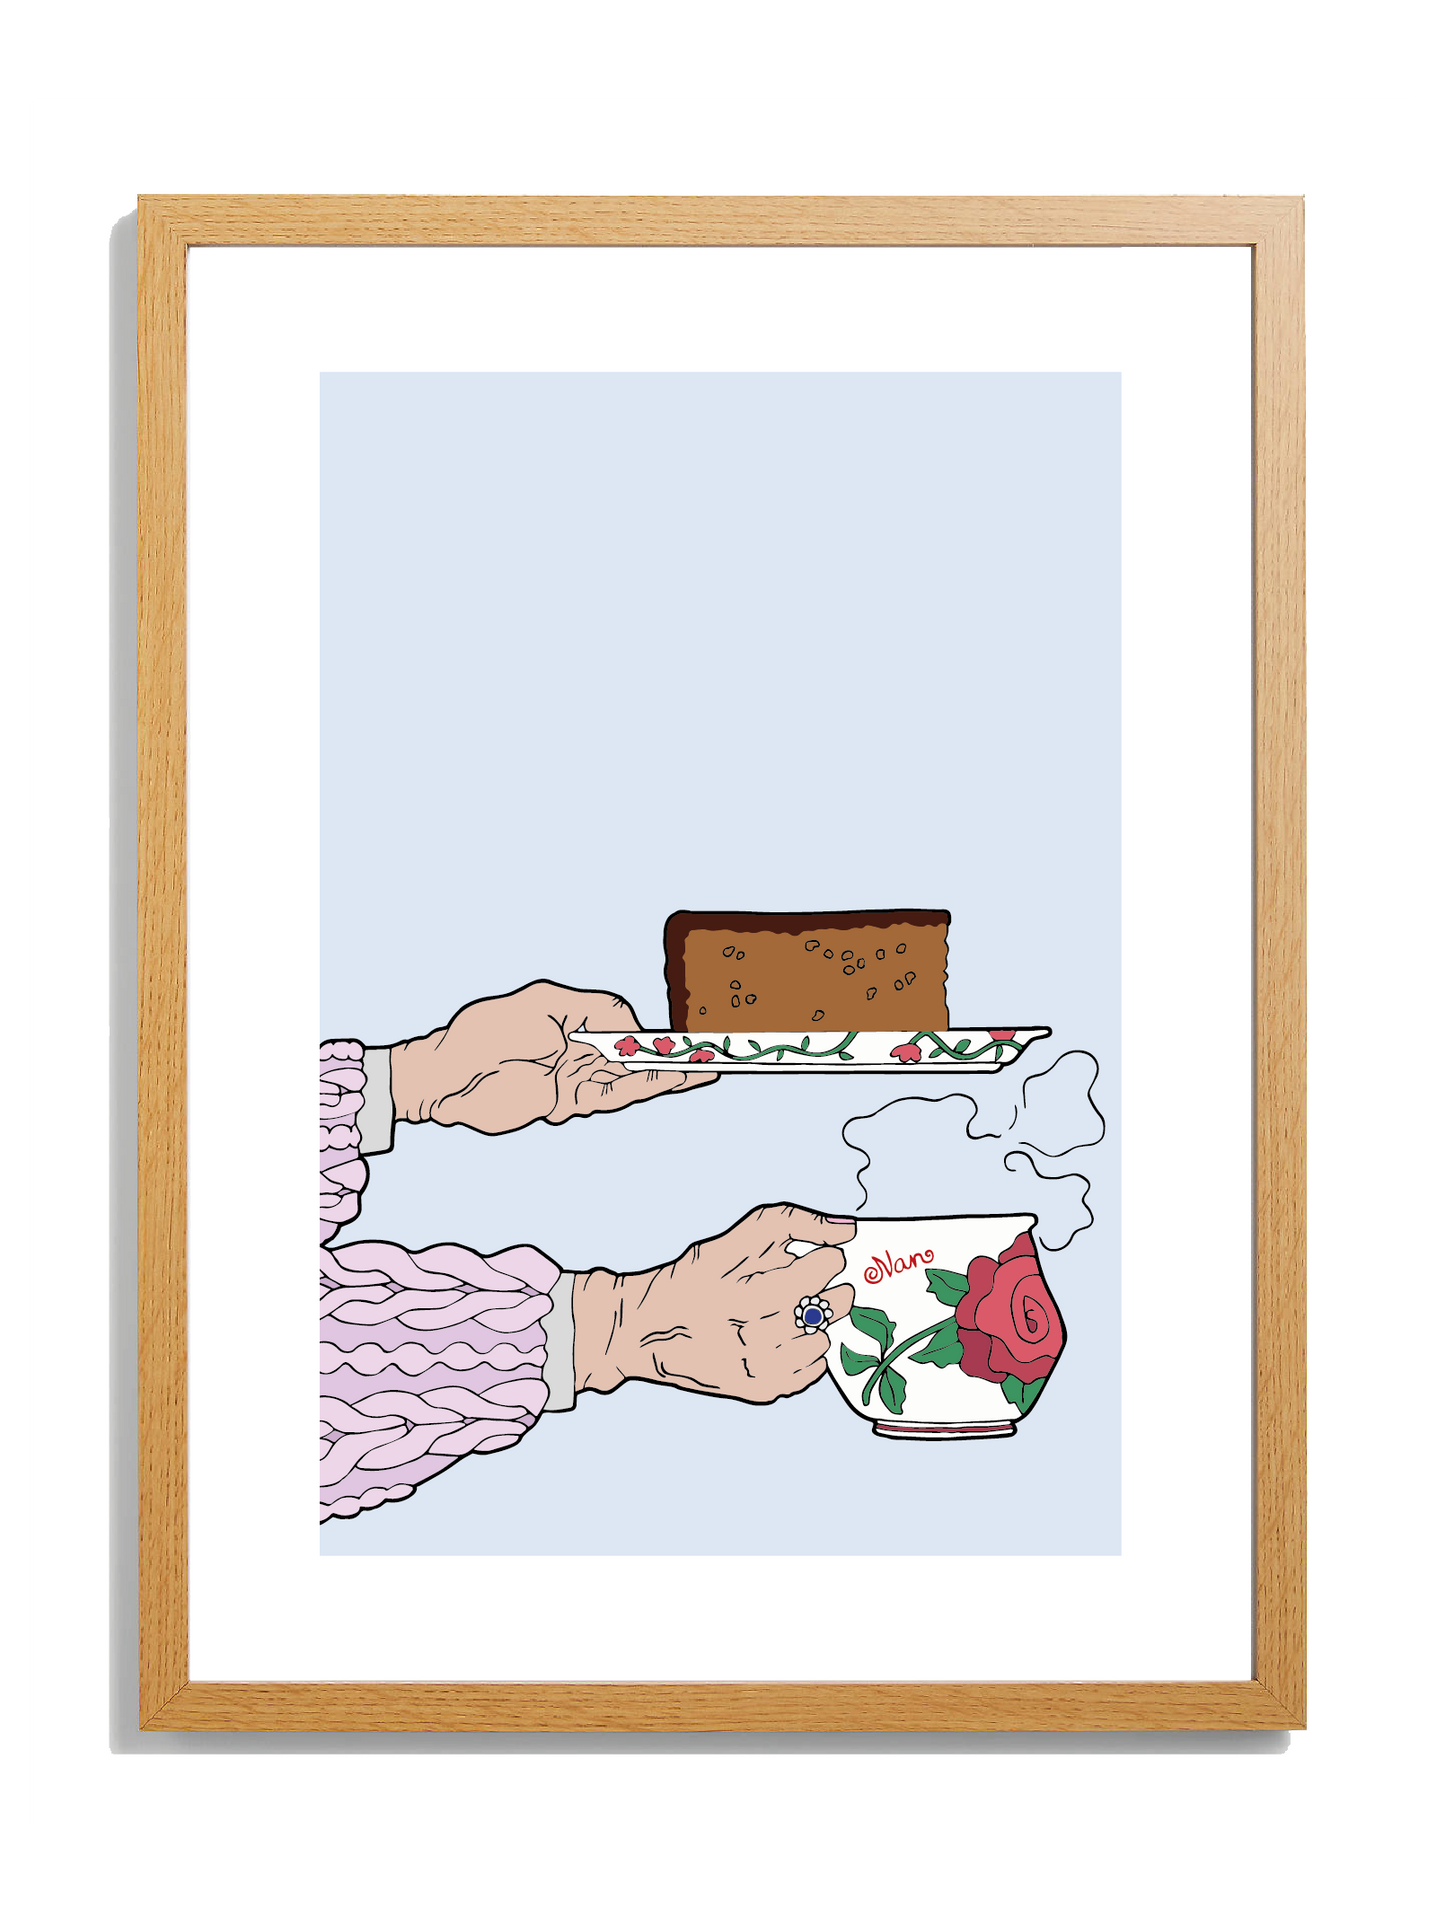 Nan's Offerings; Tea & Parkin (Limited, 50) - Art Print - Luke Horton